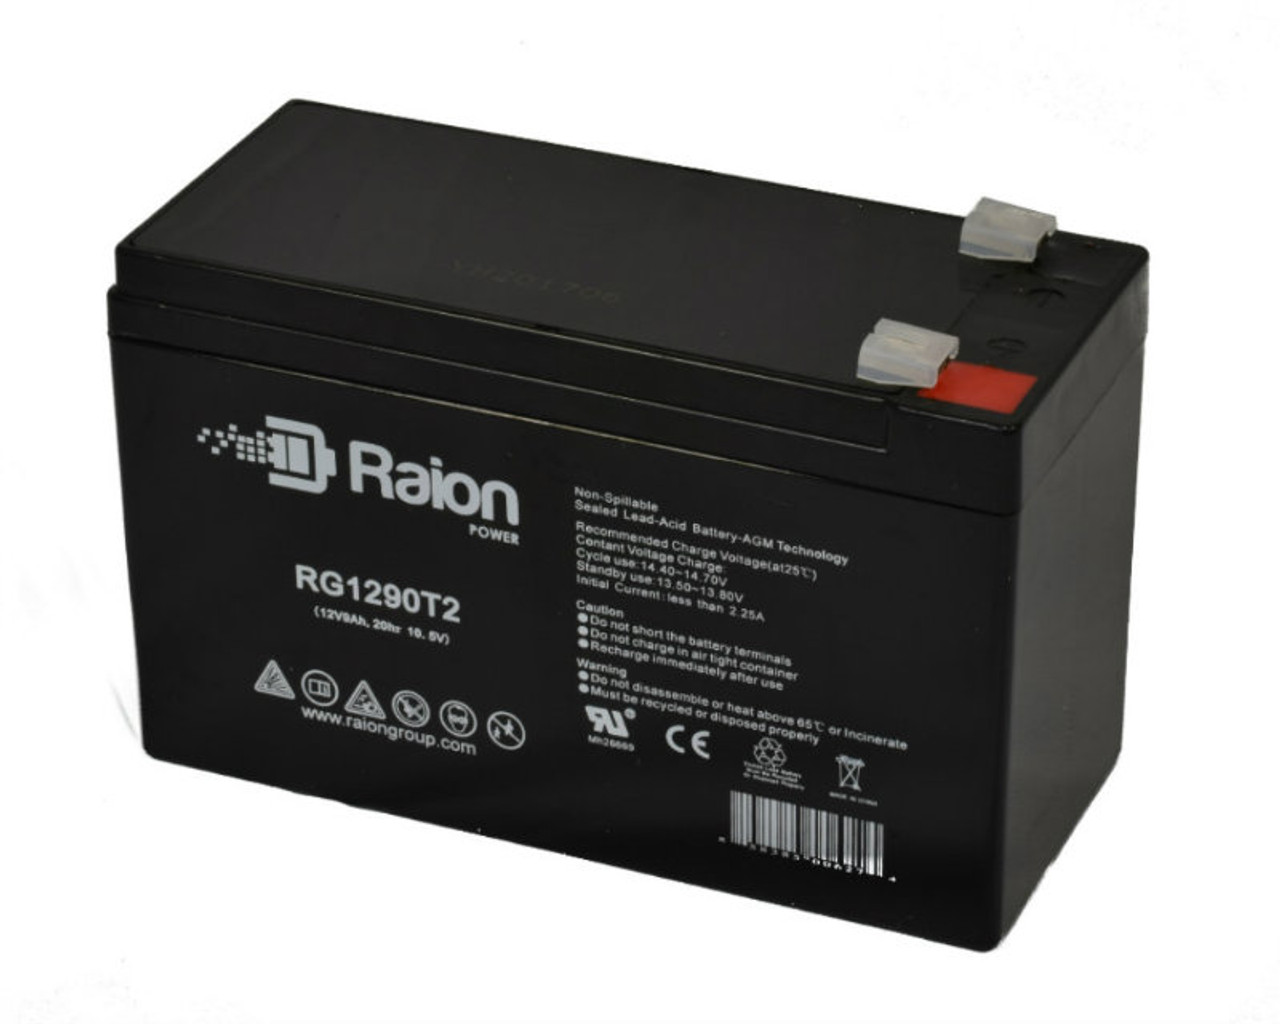 Raion Power RG1290T2 12V 9Ah AGM Battery for Upsonic DS 1400